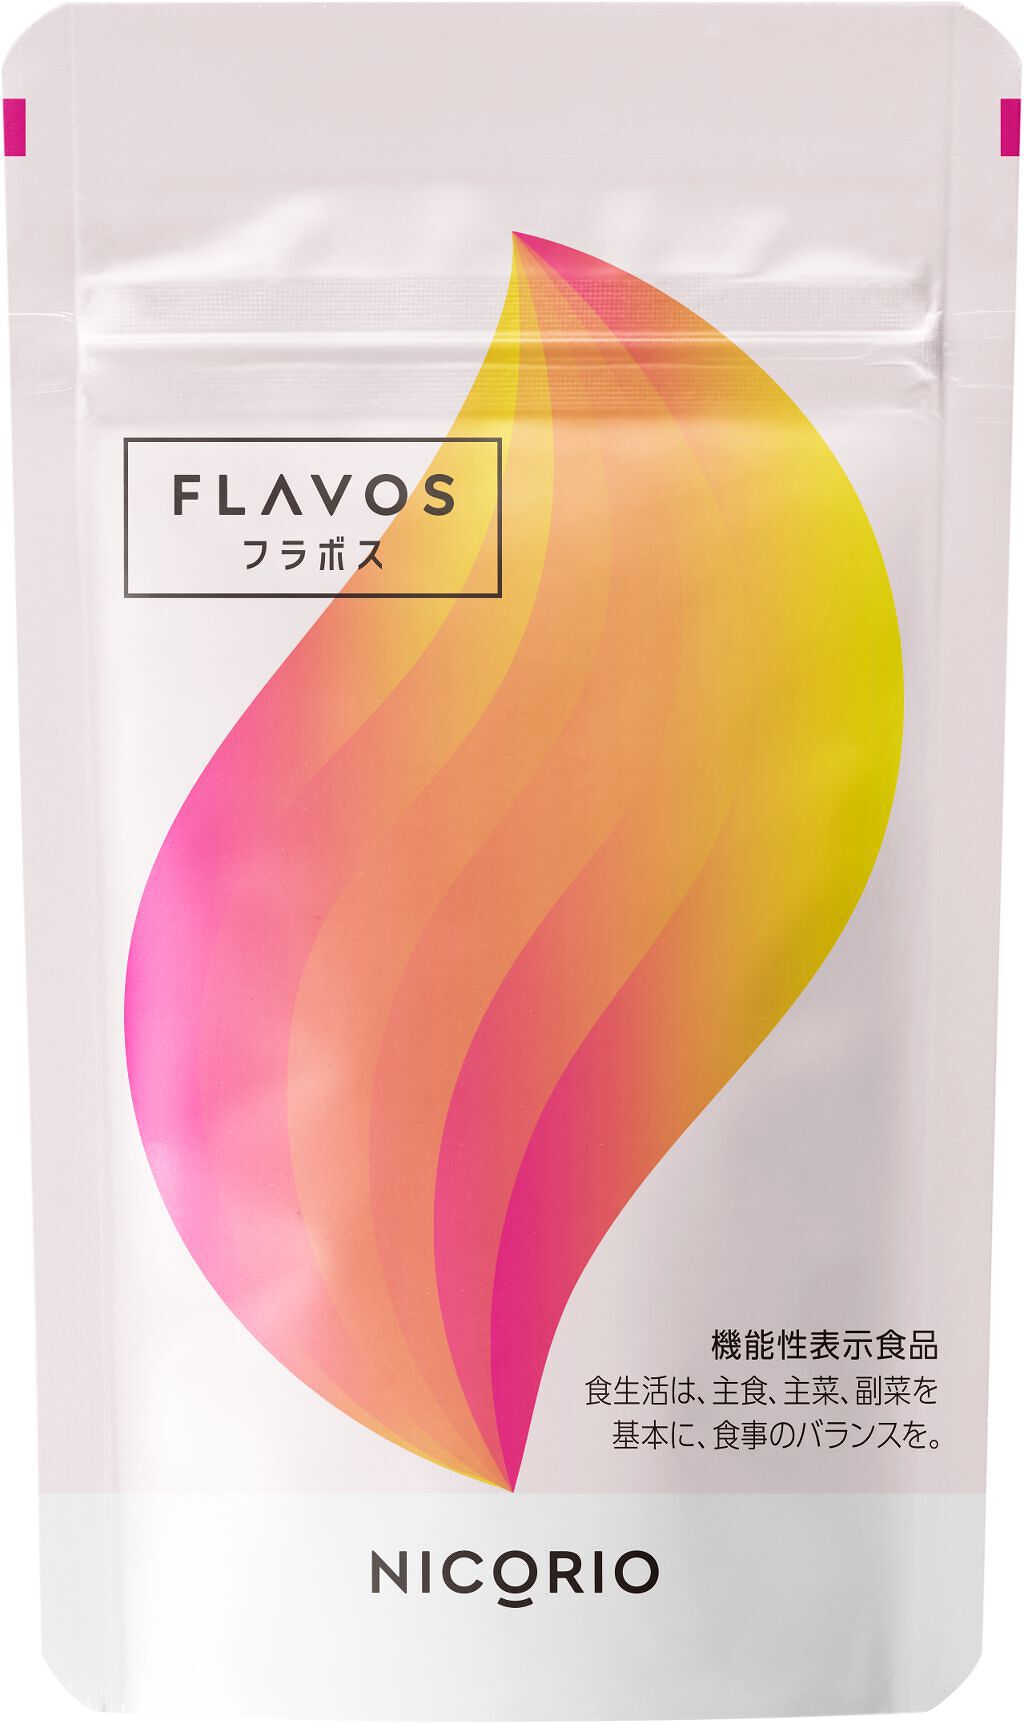 ニコリオ フラボス 31粒×3袋 FLAVOS - ダイエット食品